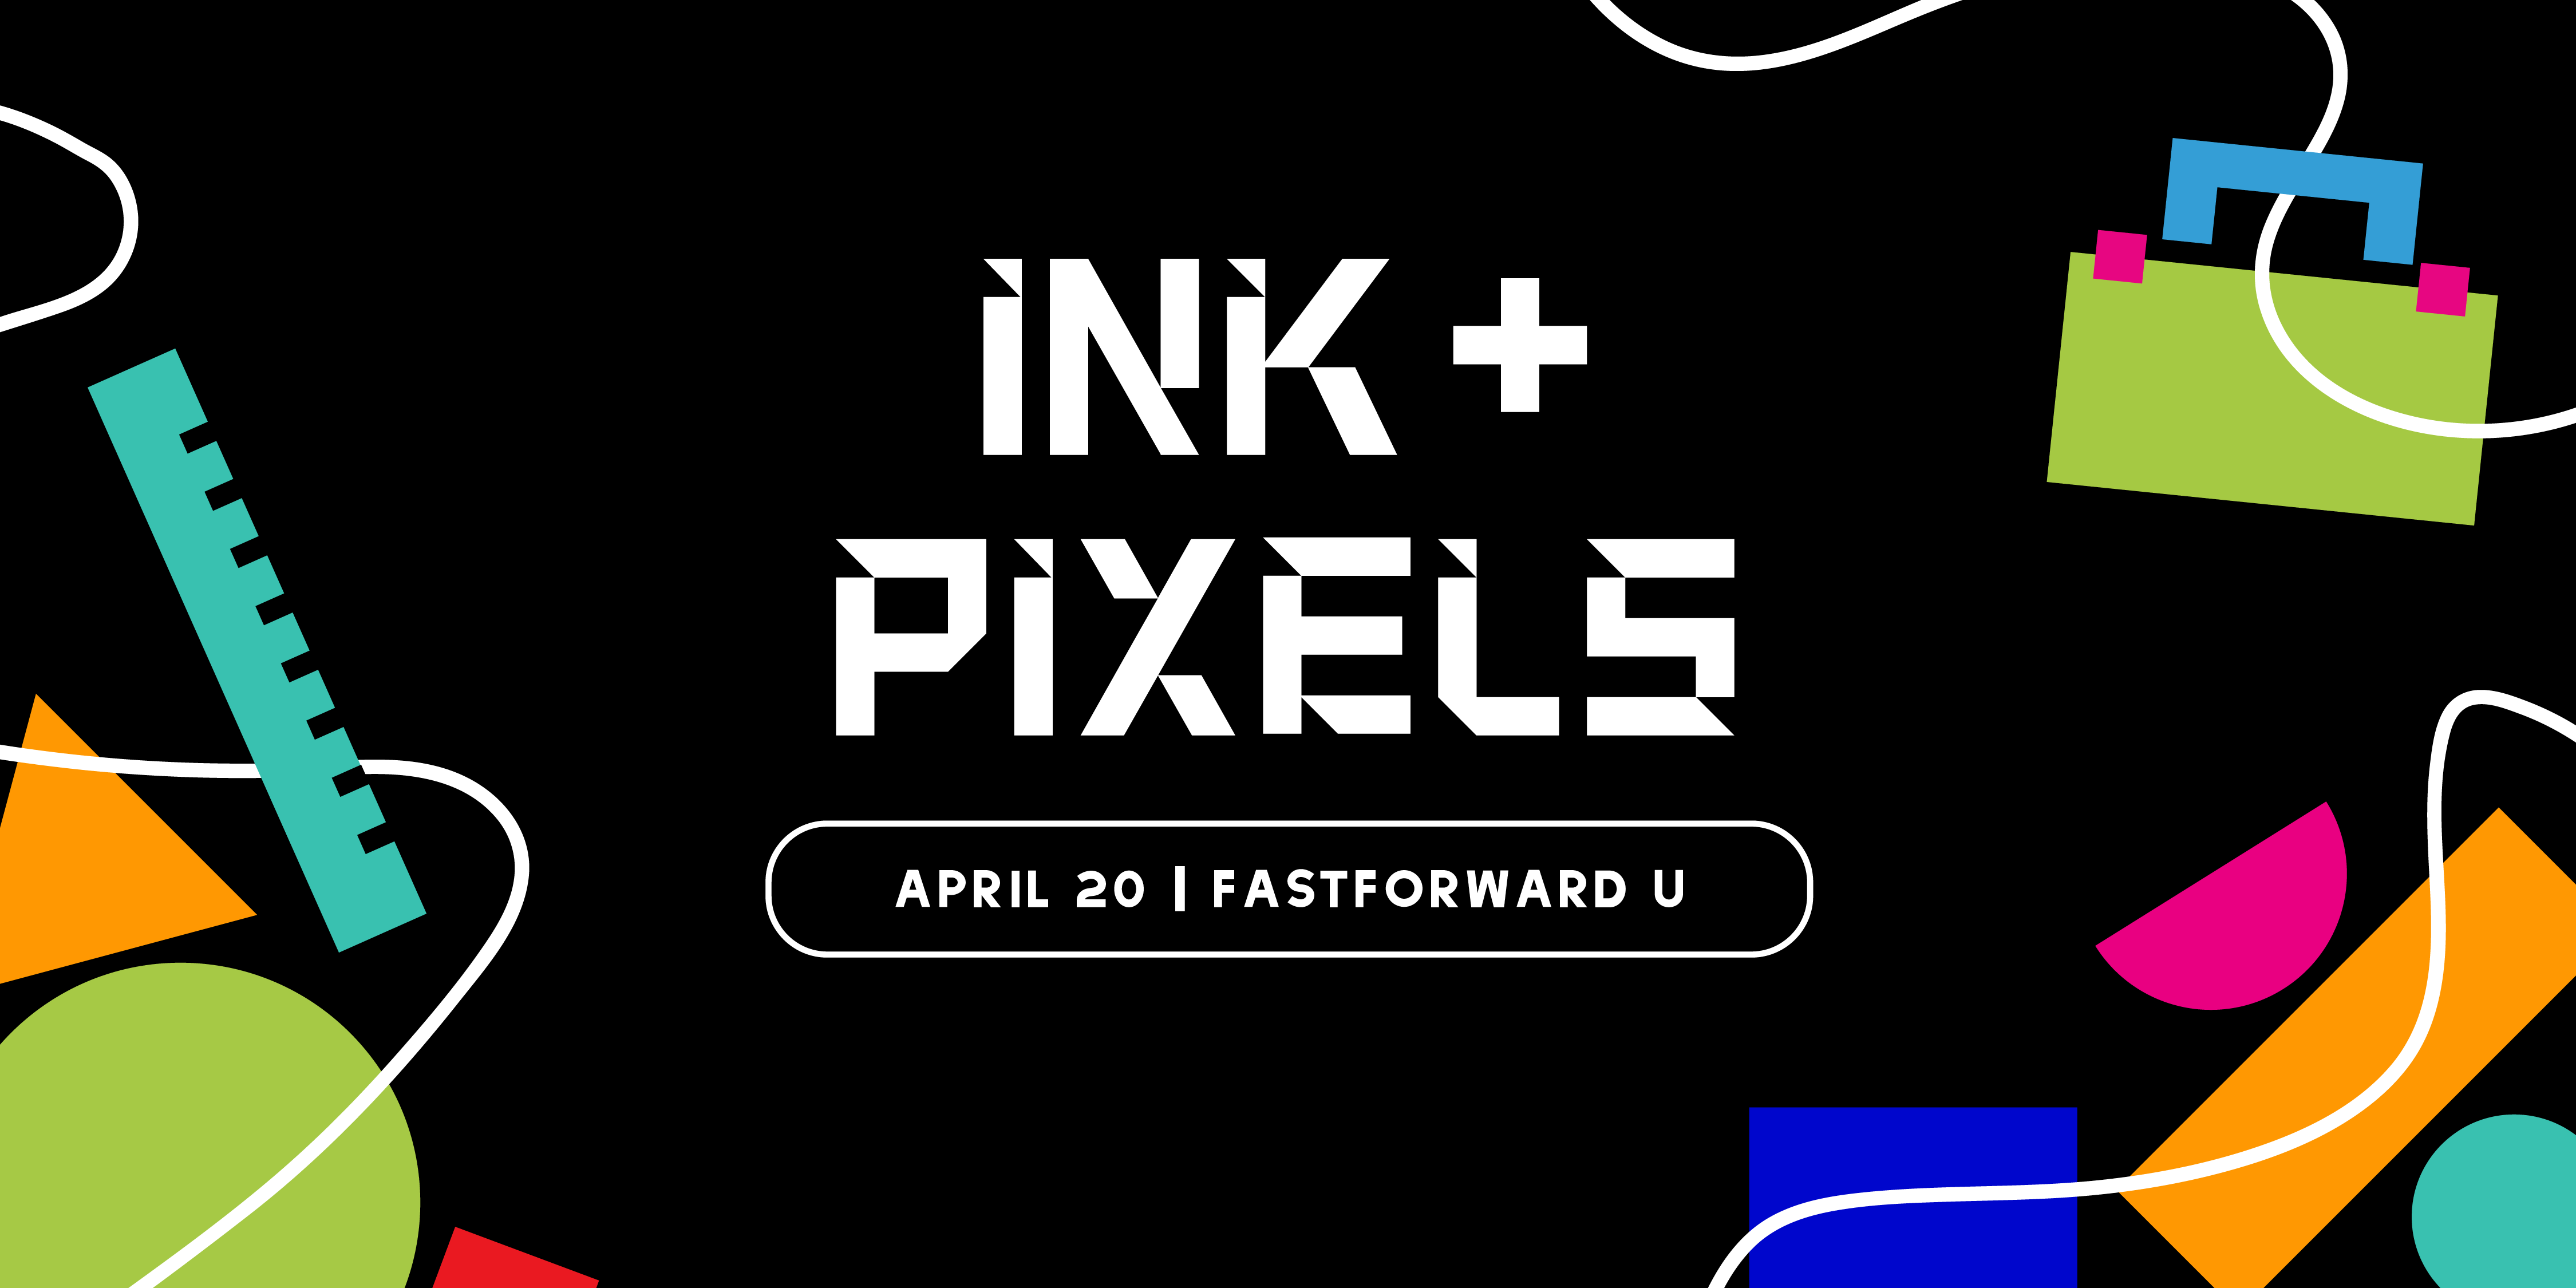 Ink + Pixels, April 20 | Fastforward U 